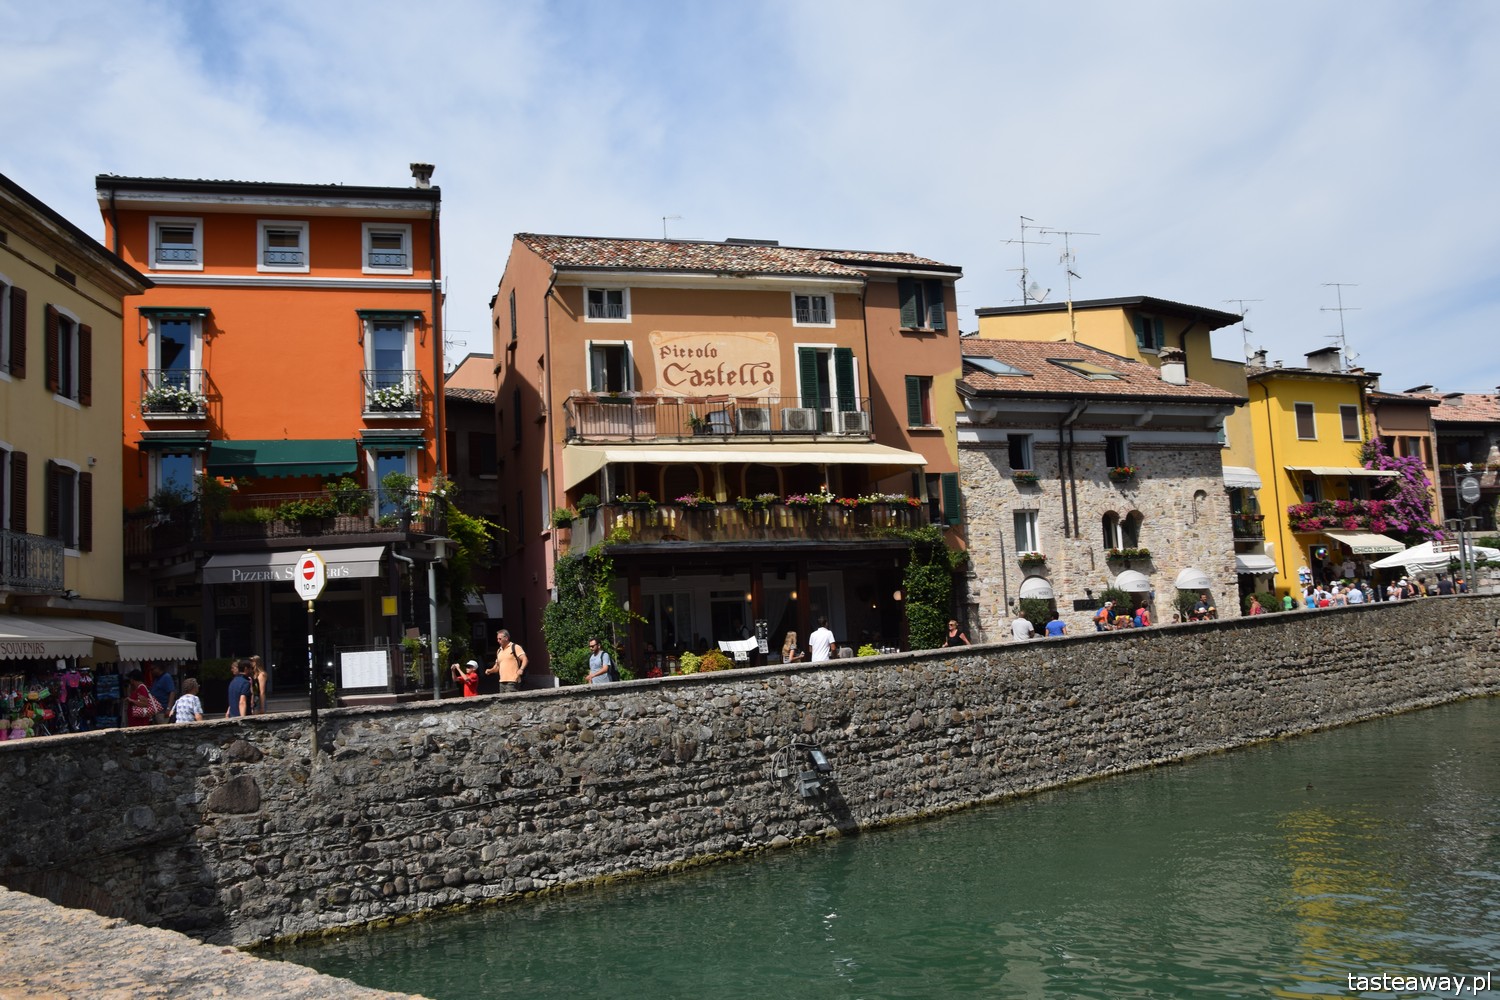 Jezioro Garda, Lago di Garda, co zobaczyć nad Jeziorem Garda, gdzie mieszkać, dom we Włoszech, najpiękniejsze miejsca nad jeziorem Garda, miasteczka nad Jeziorem Garda, Sirmione